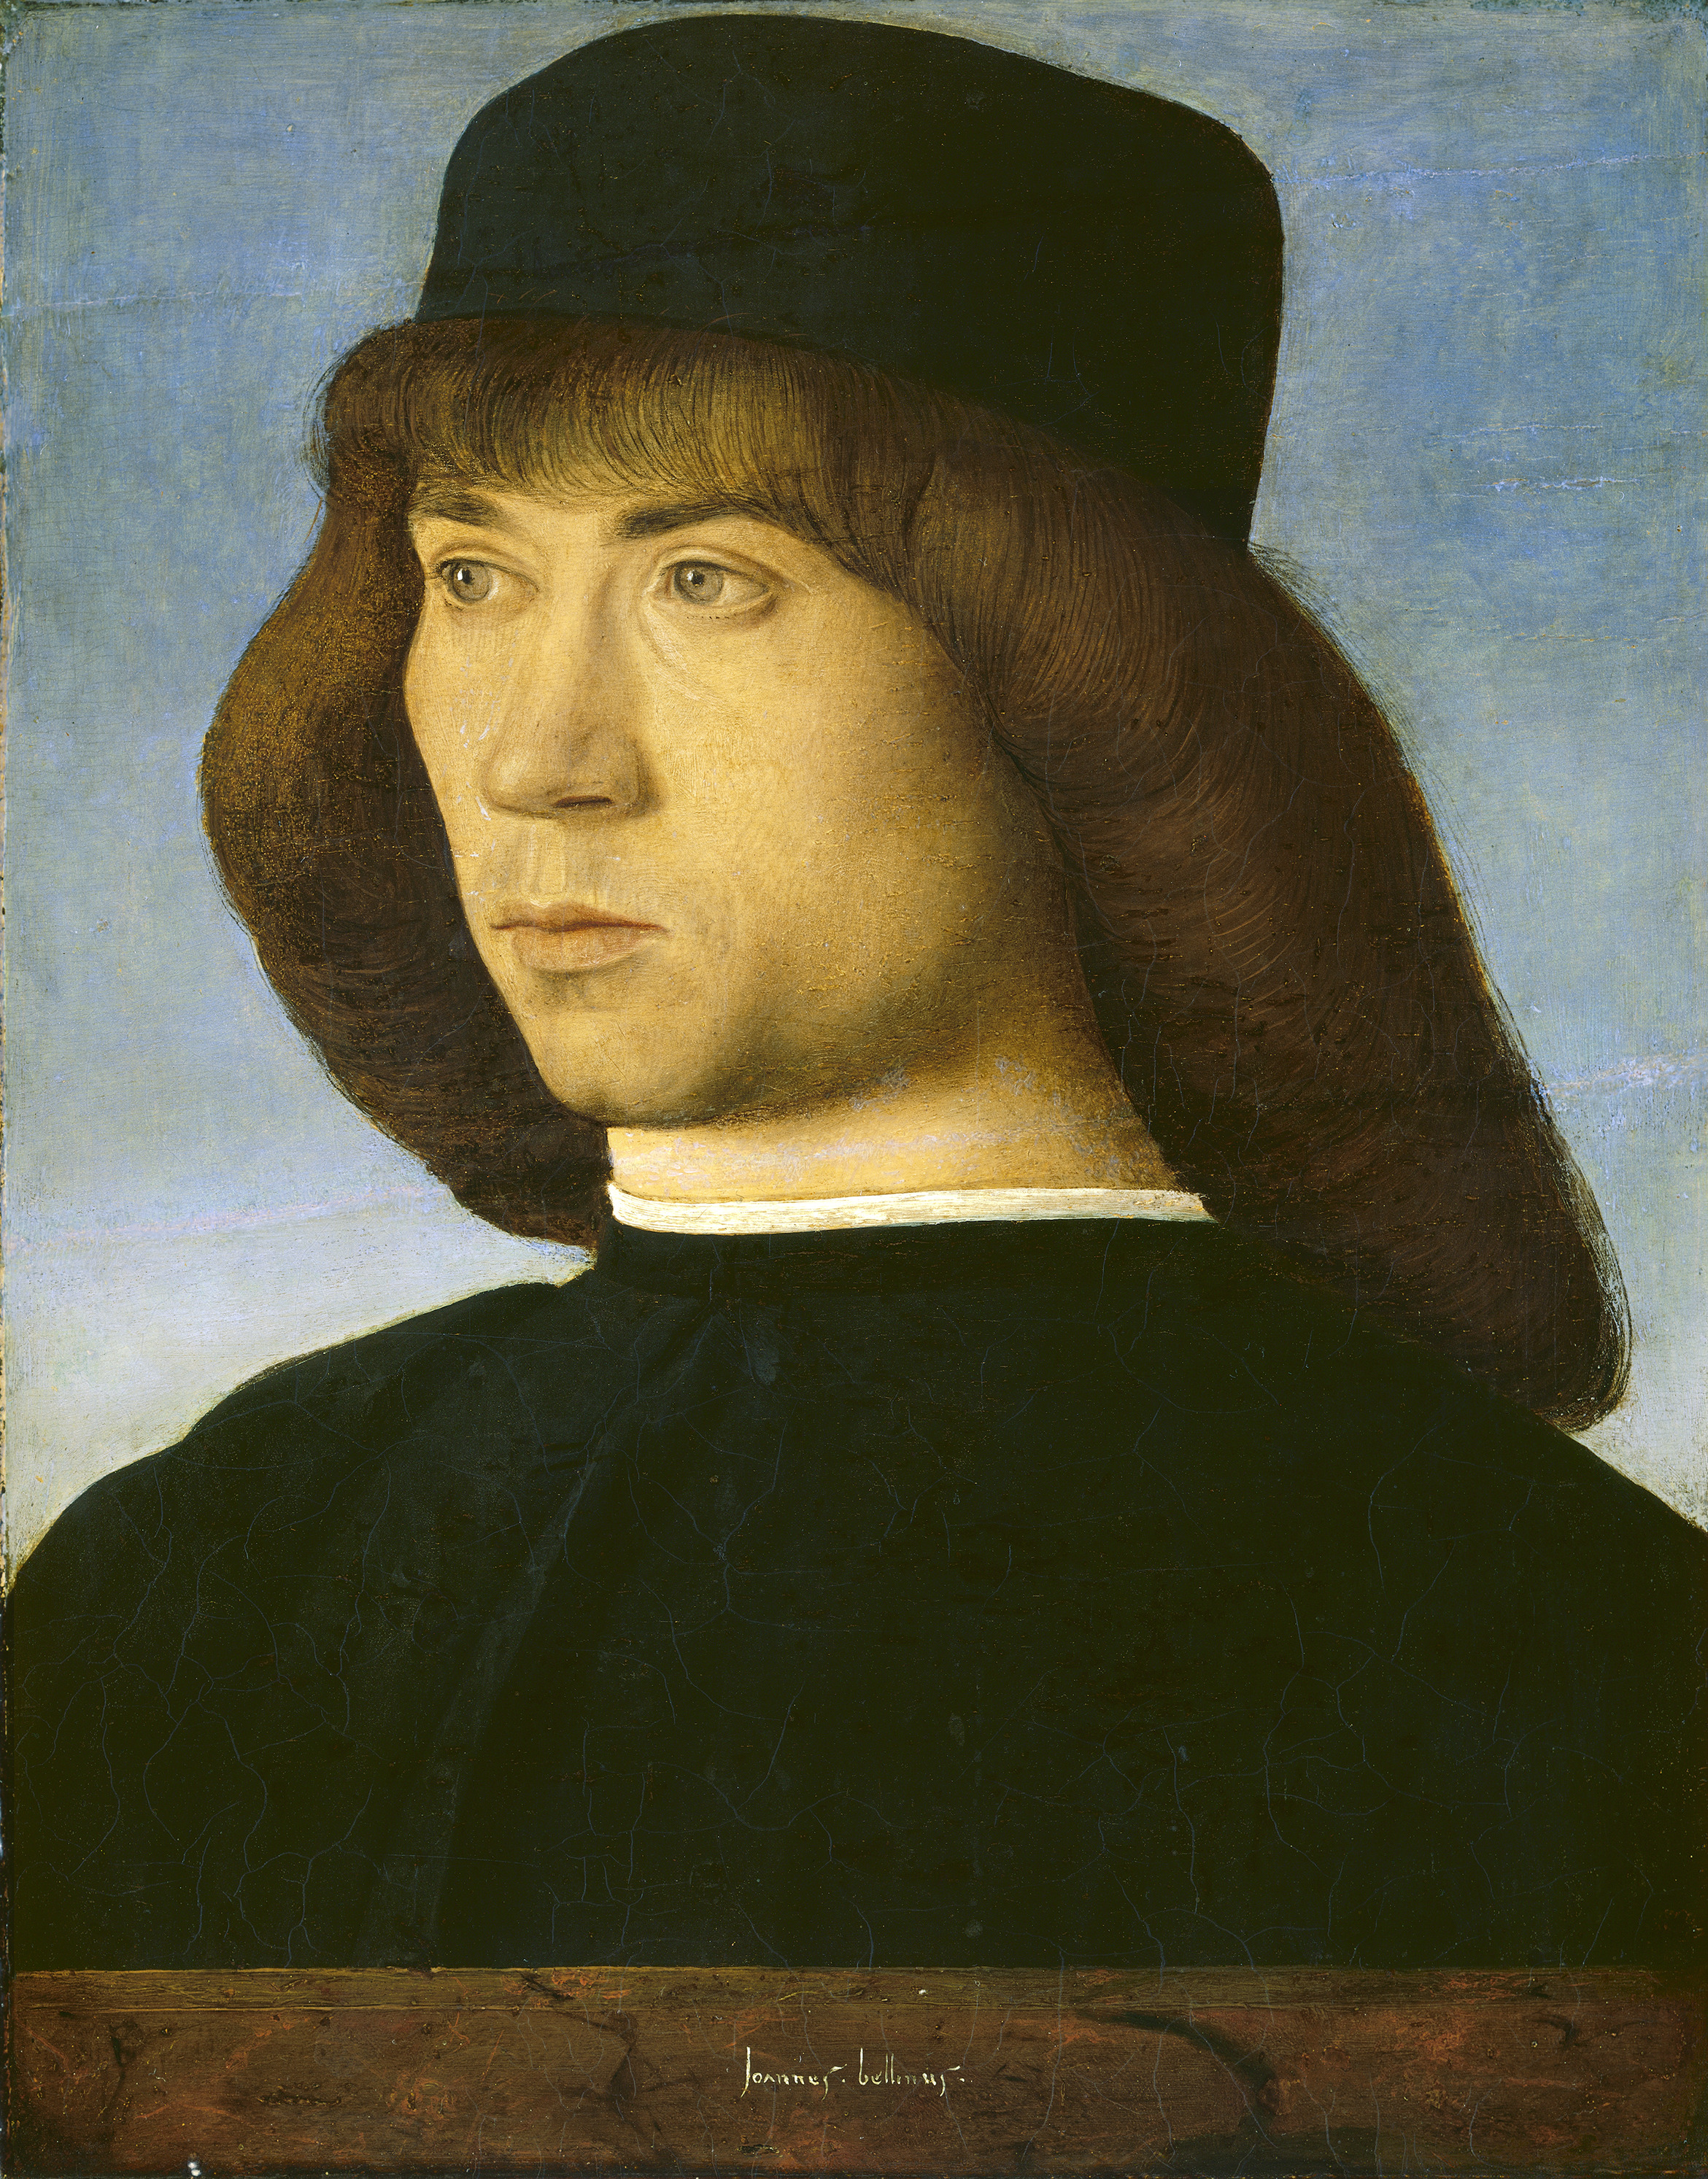 Τζιοβάνι Μπελίνι - περίπου 1430 - 26 Noεμβρίου 1516